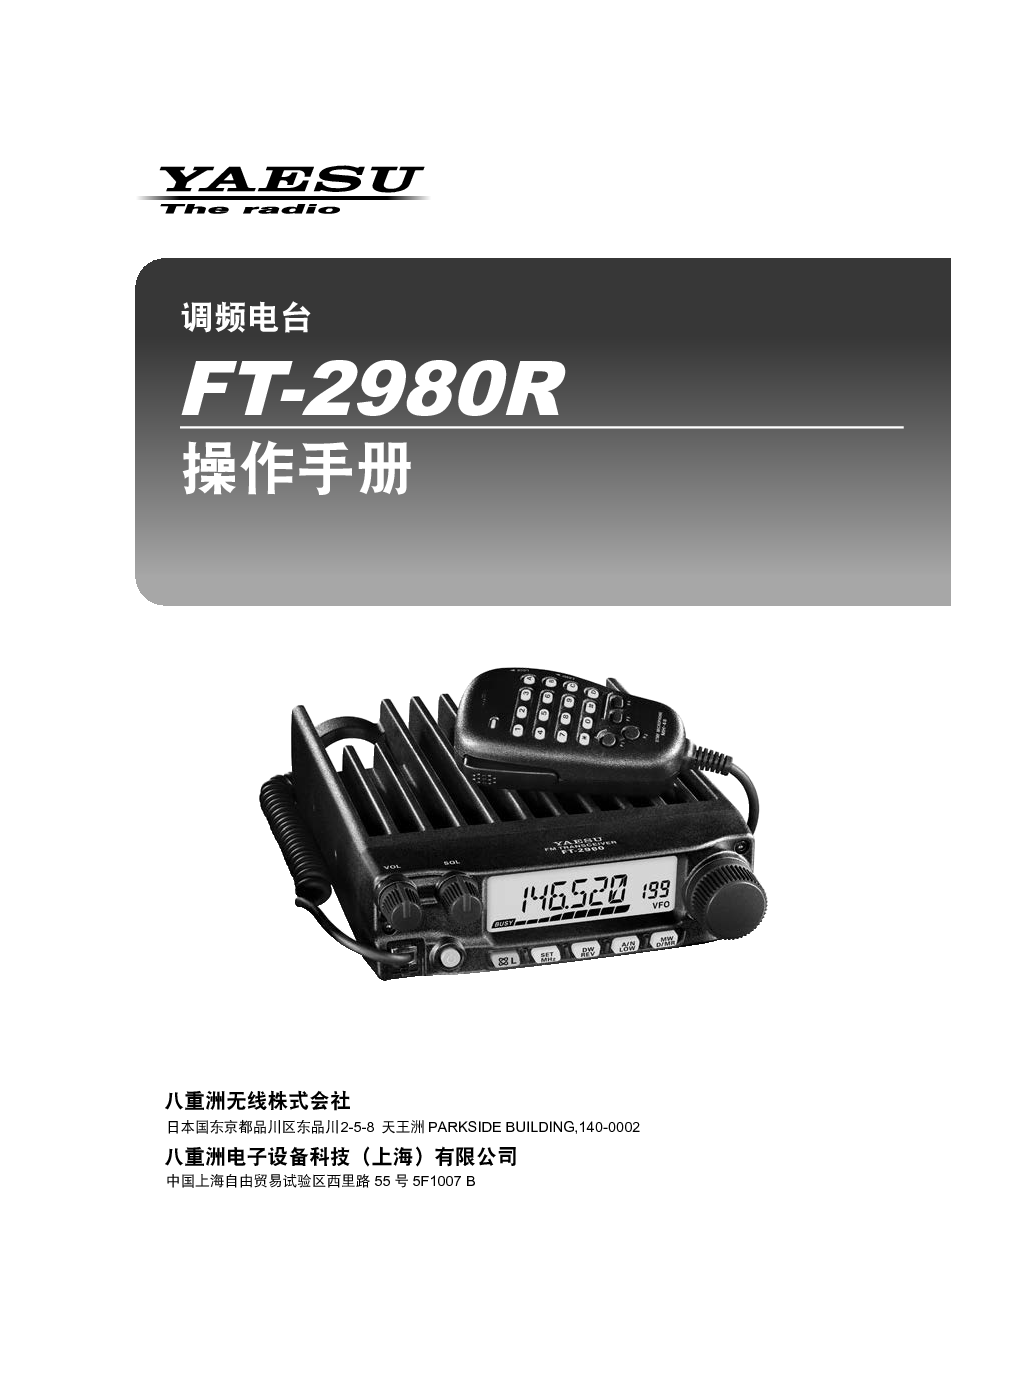 八重洲 YAESU FT-2980R 操作手册 封面